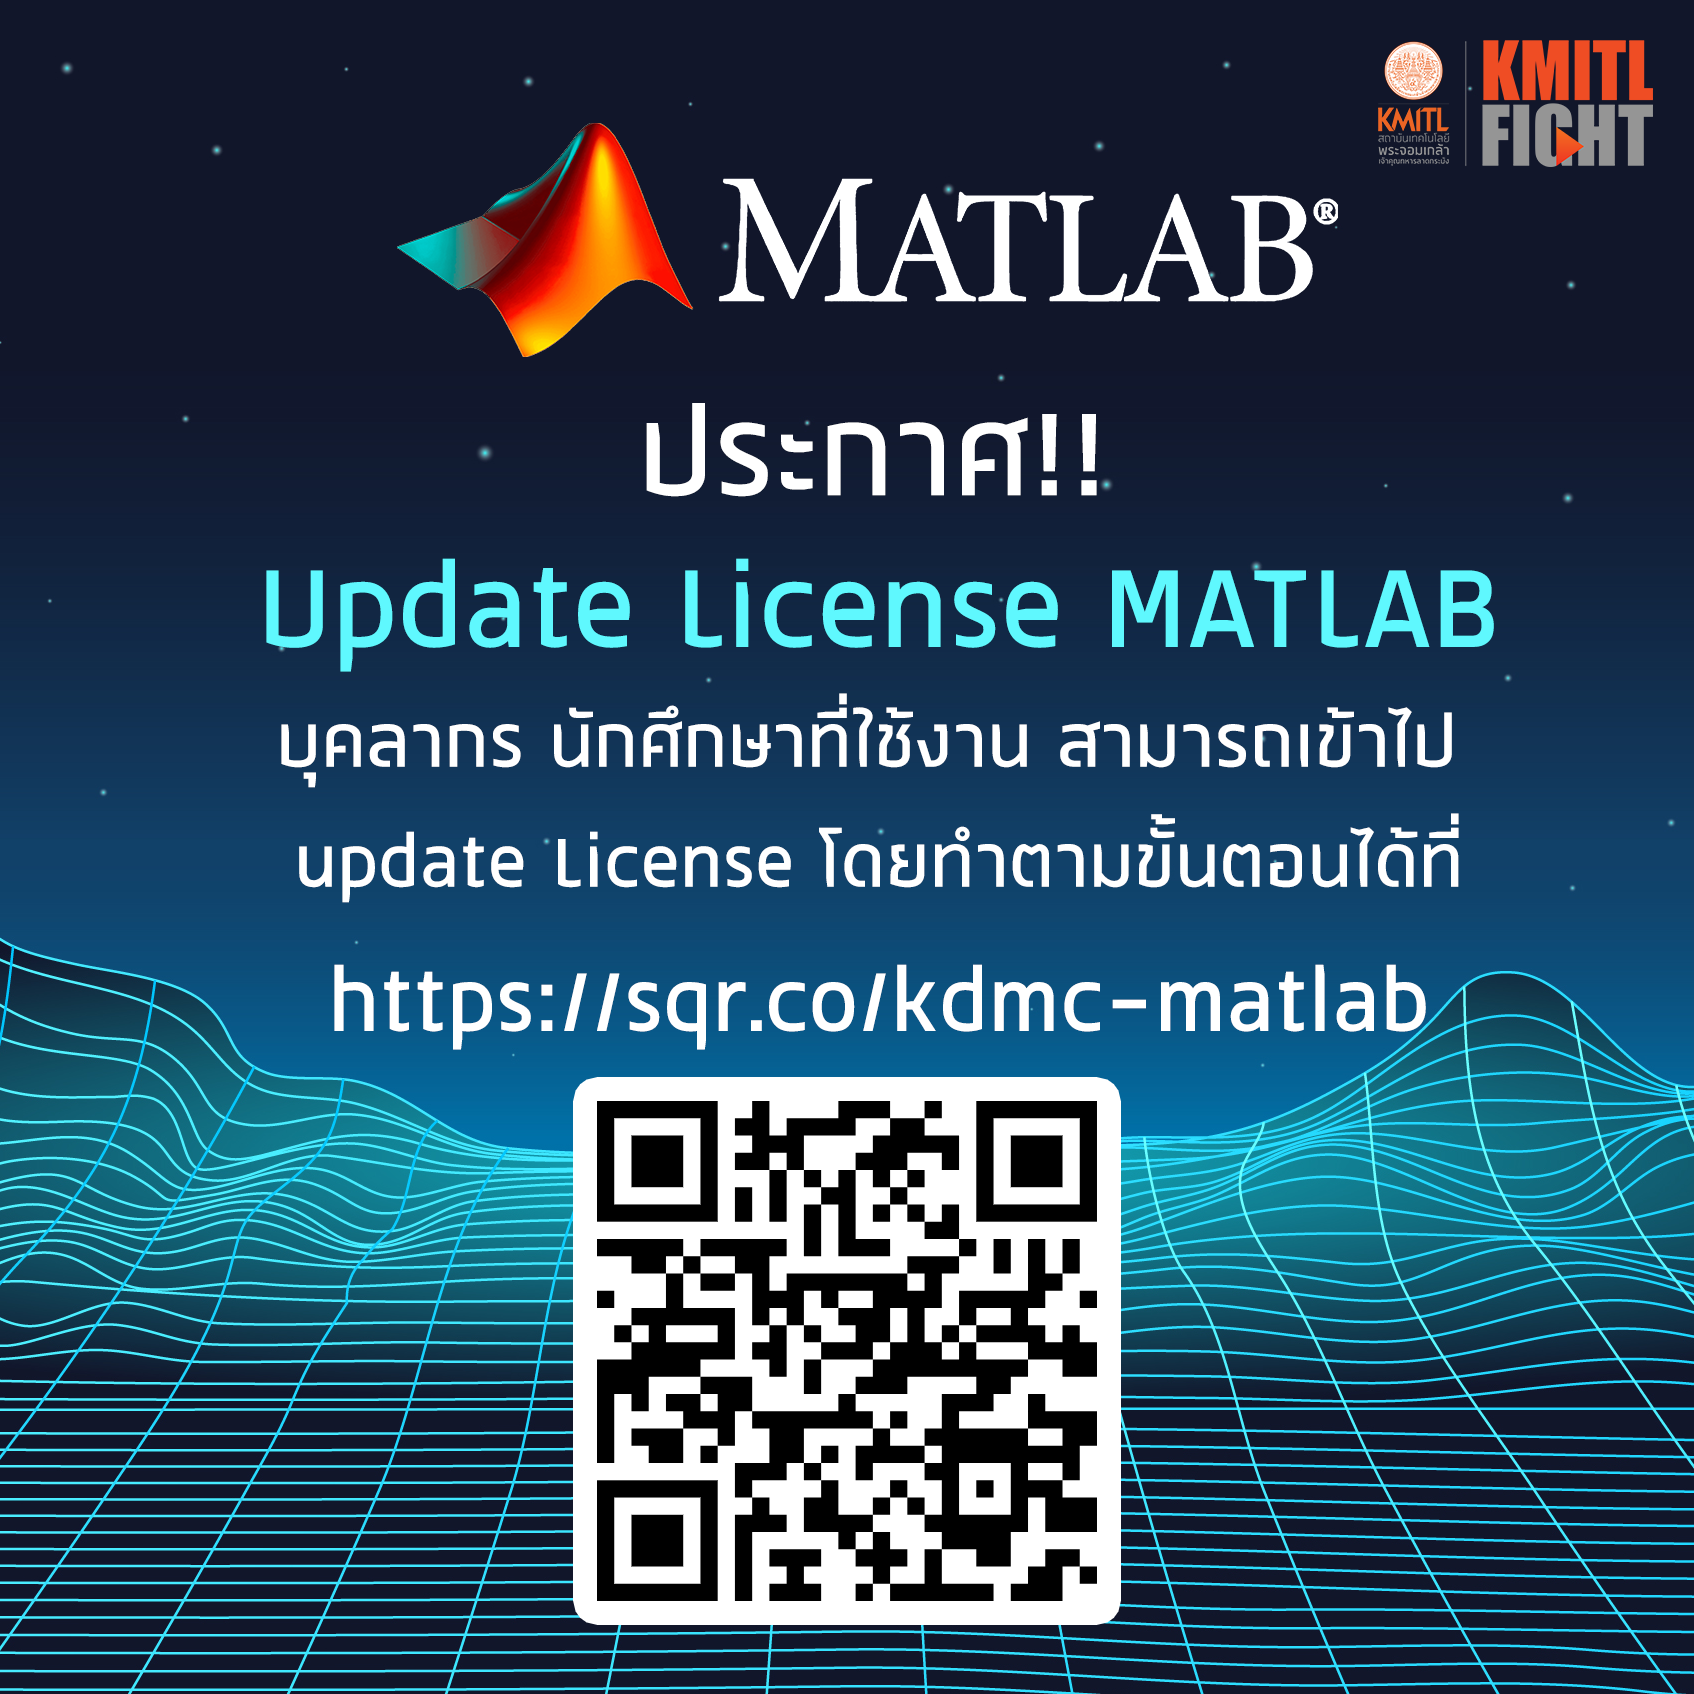 ประชาสัมพันธ์: อัพเดท License MATLAB สำหรับบุคลากรและนักศึกษา ประจำปี 2567